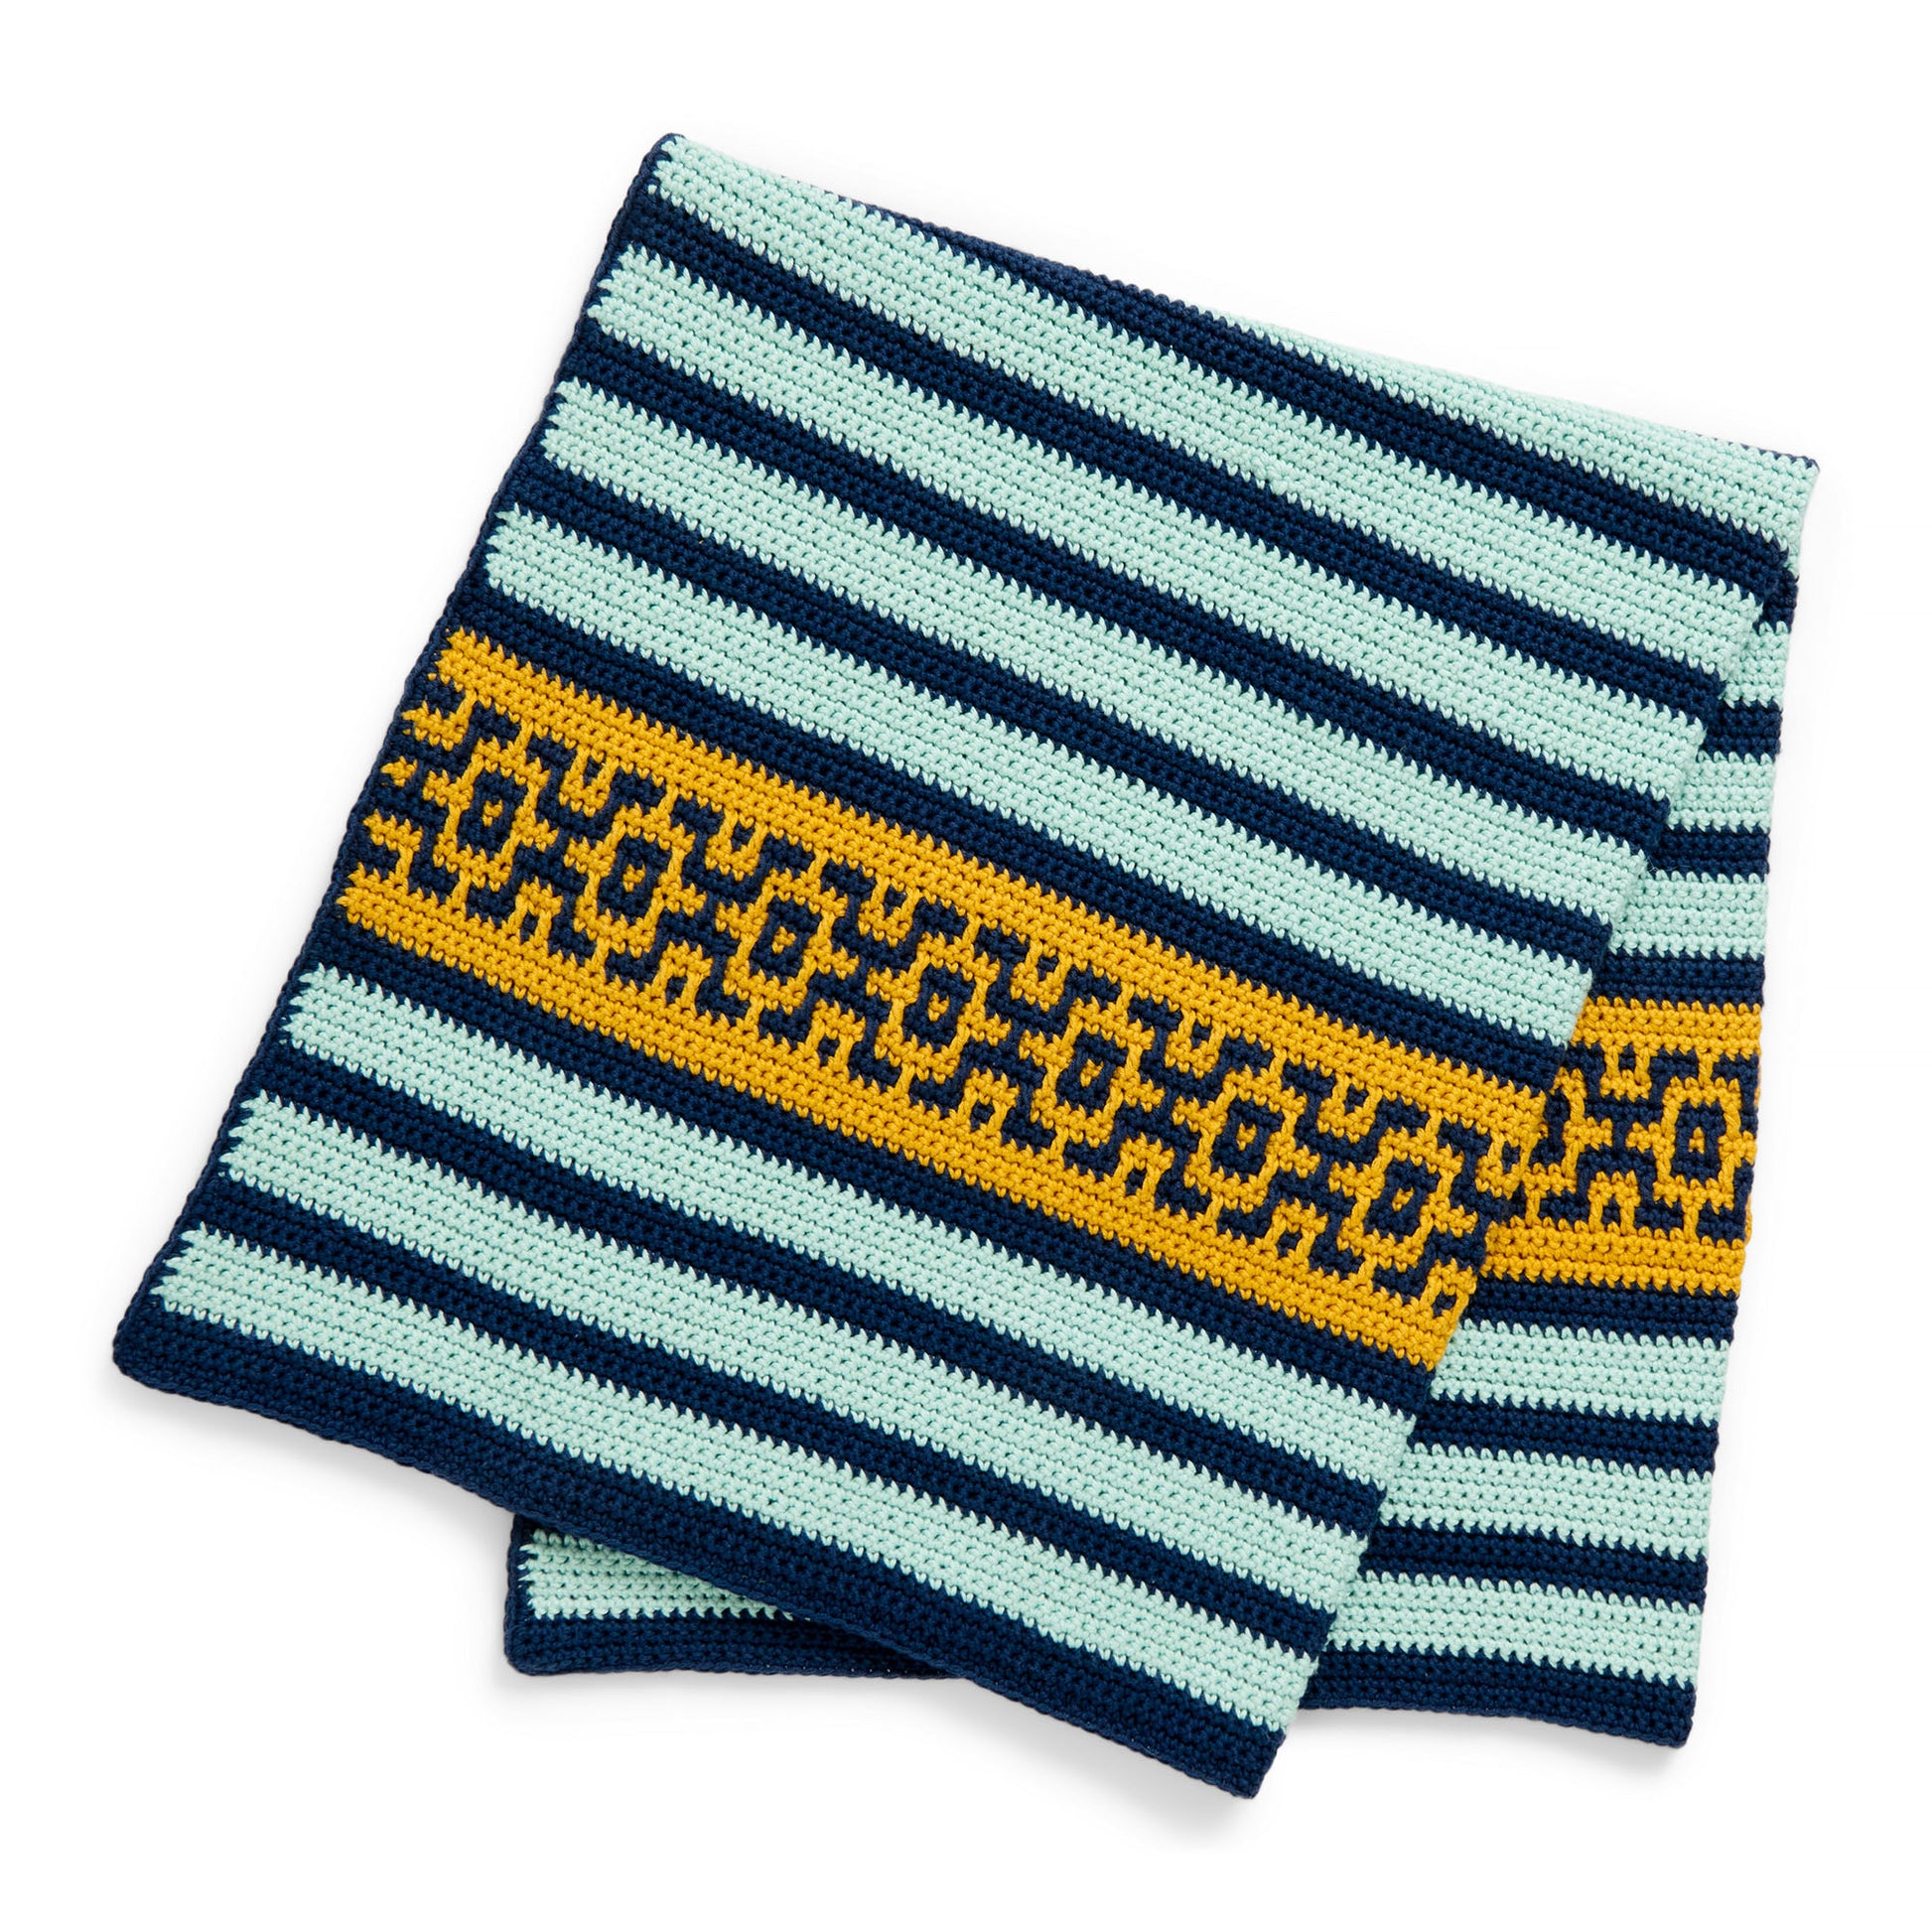 Free Bernat Geometric Bliss Crochet Baby Blanket Pattern